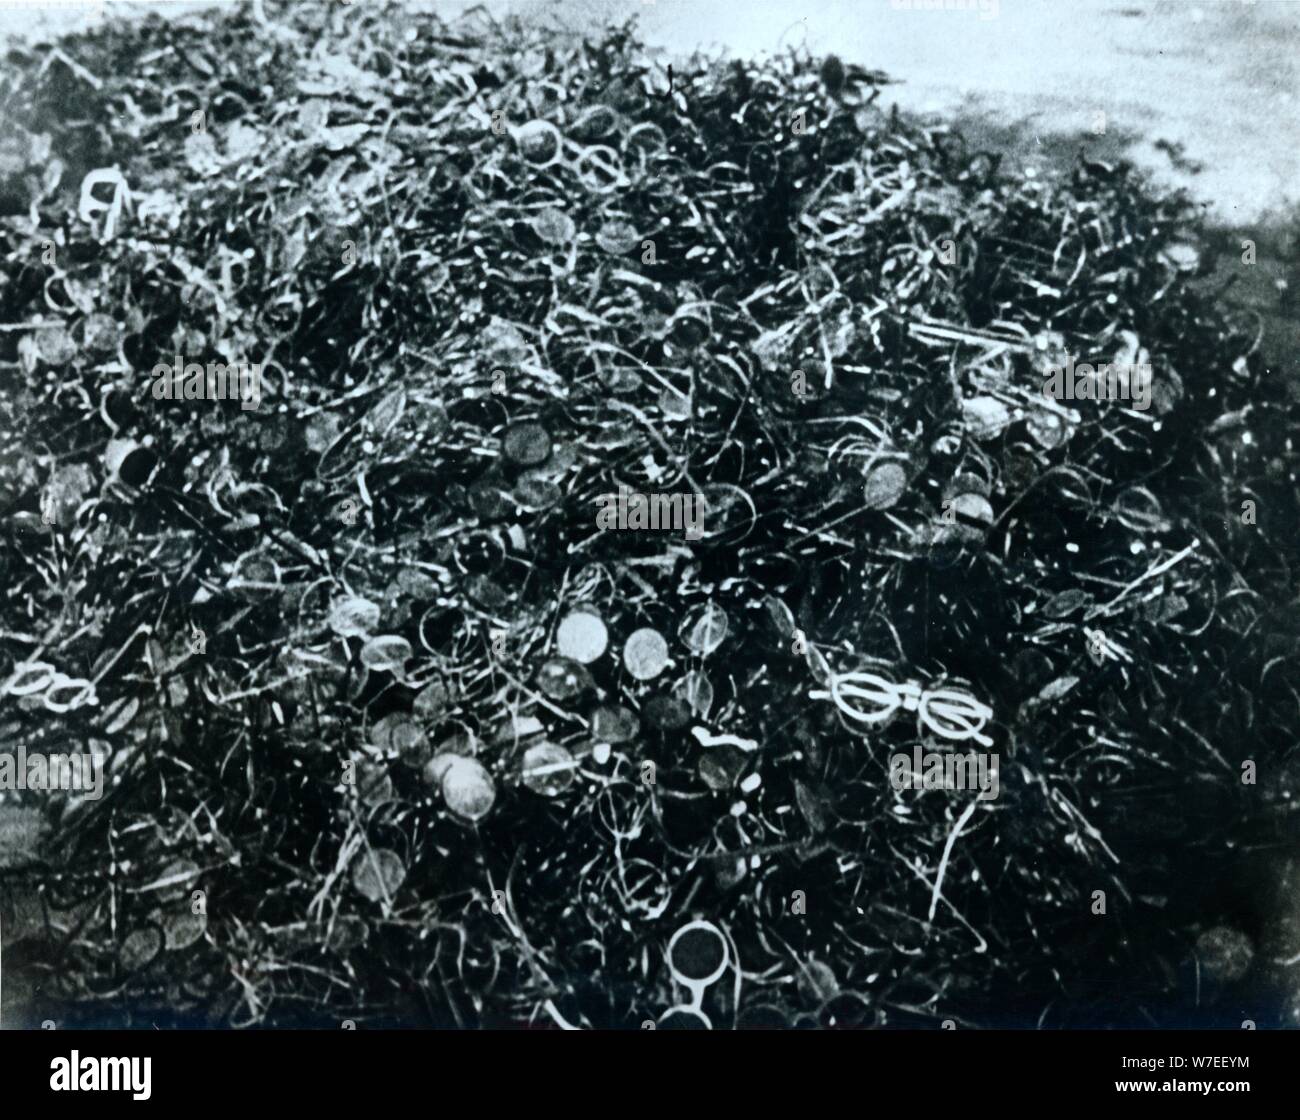 Stapel von Paaren von Brillen, KZ Auschwitz, Polen, 20. Artist: Unbekannt  Stockfotografie - Alamy